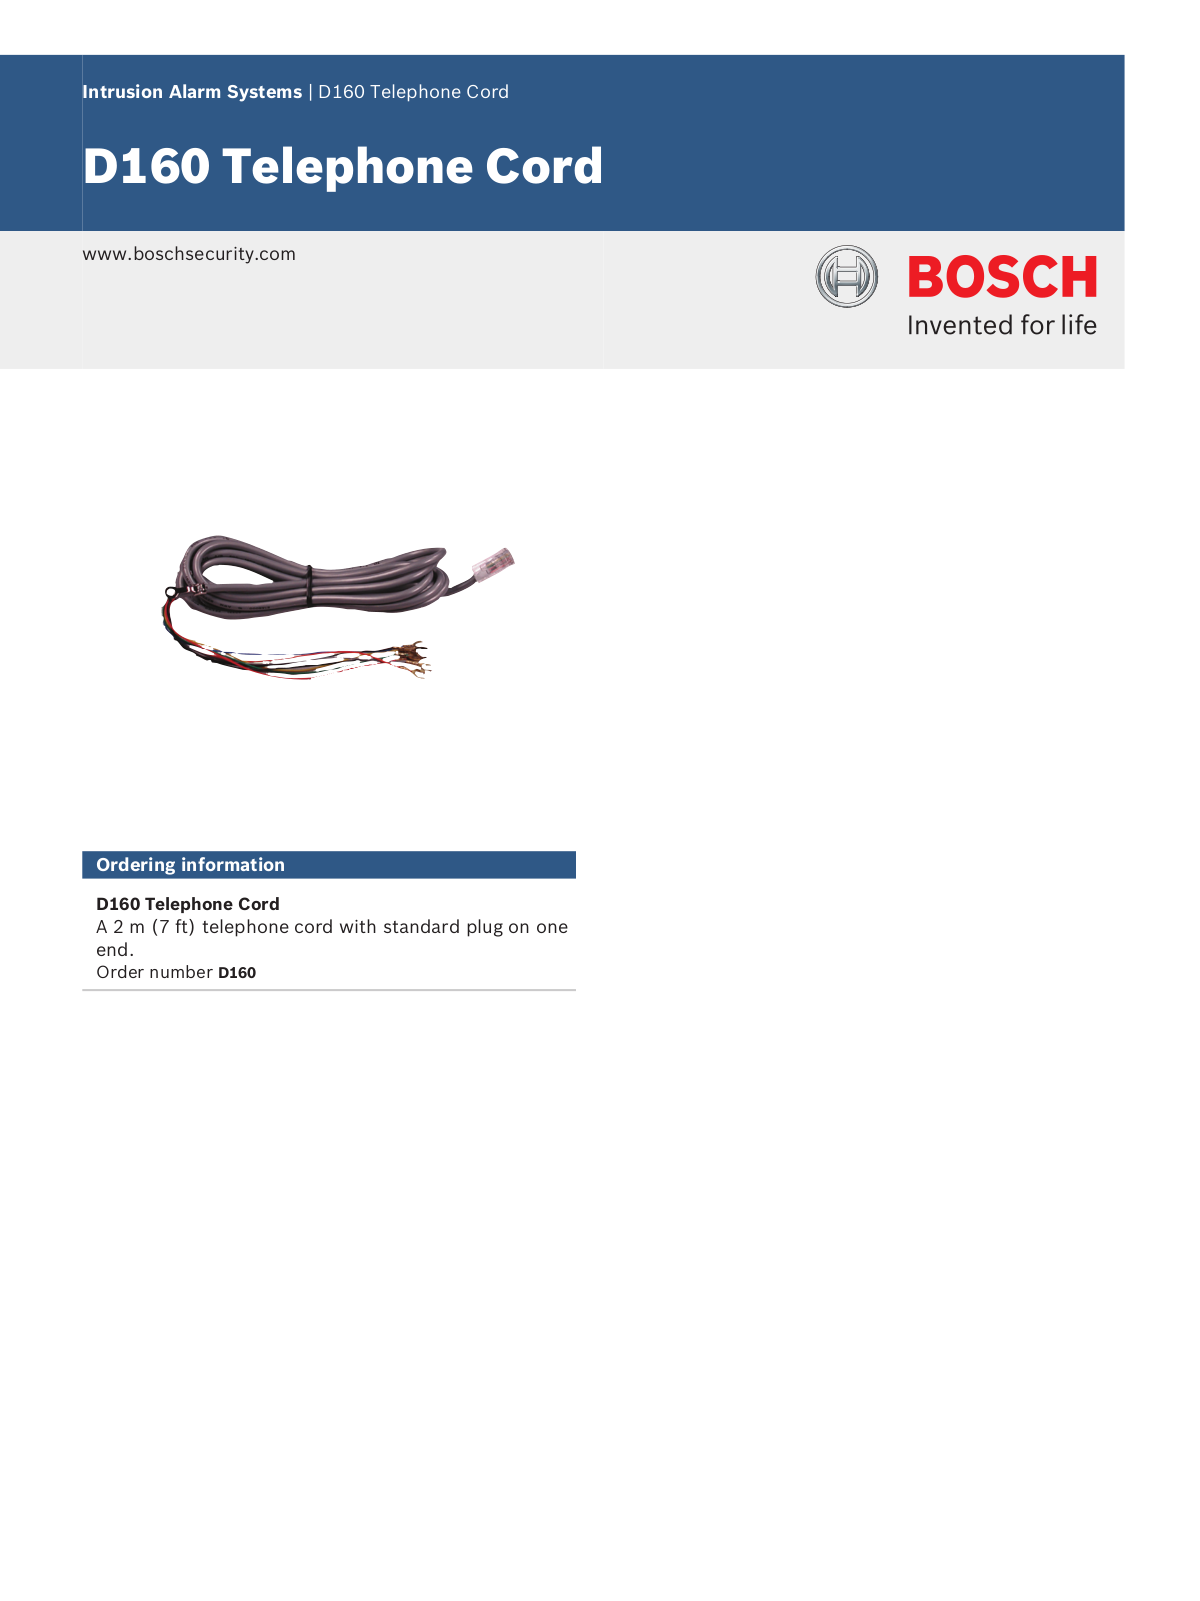 Bosch D160 Specsheet